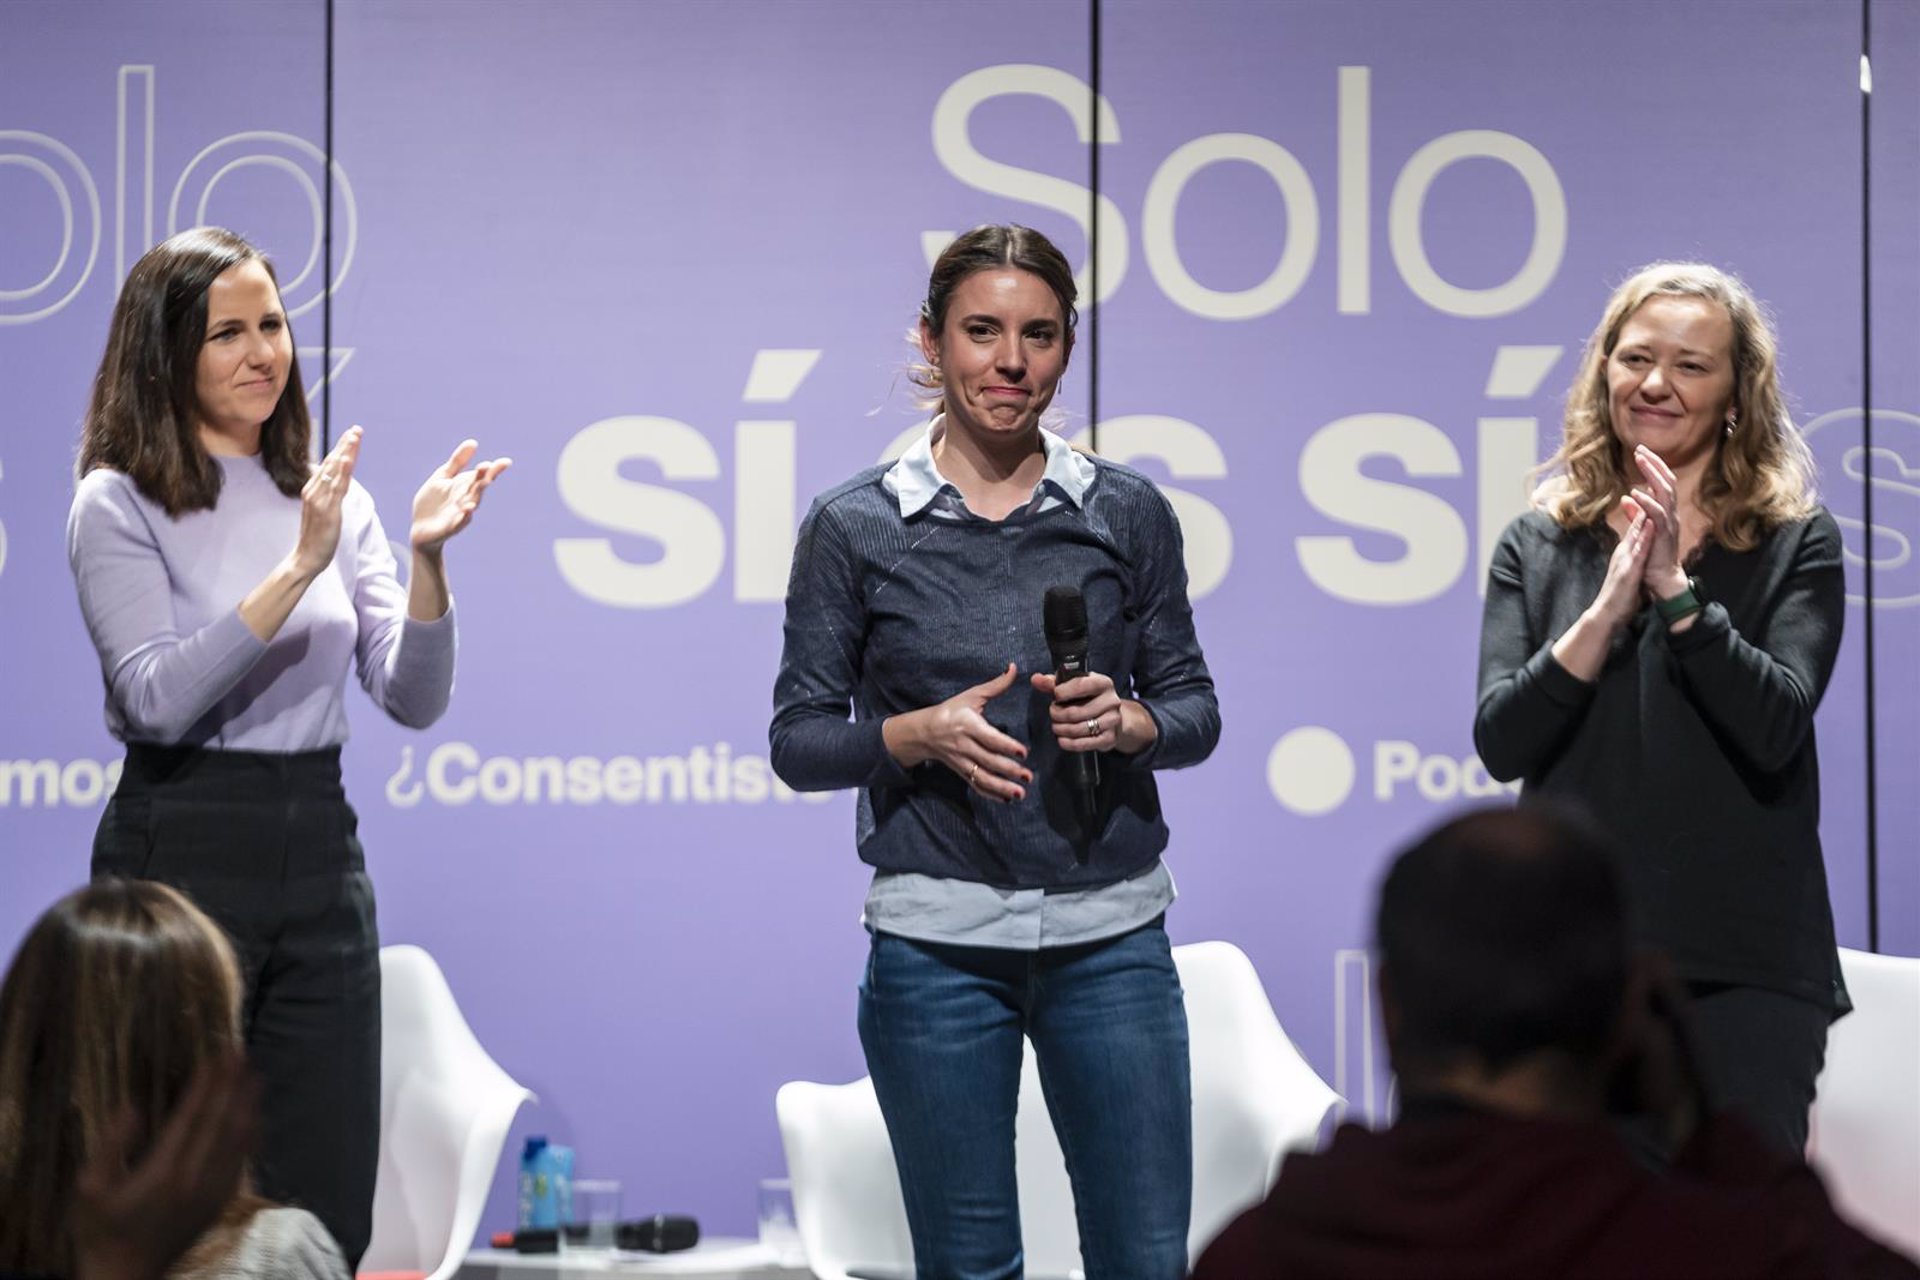 La secretaria de Acción de Gobierno de Podemos y ministra de Igualdad, Irene Montero, interviene durante el acto '¿Consentiste o no? Solo sí es sí'.